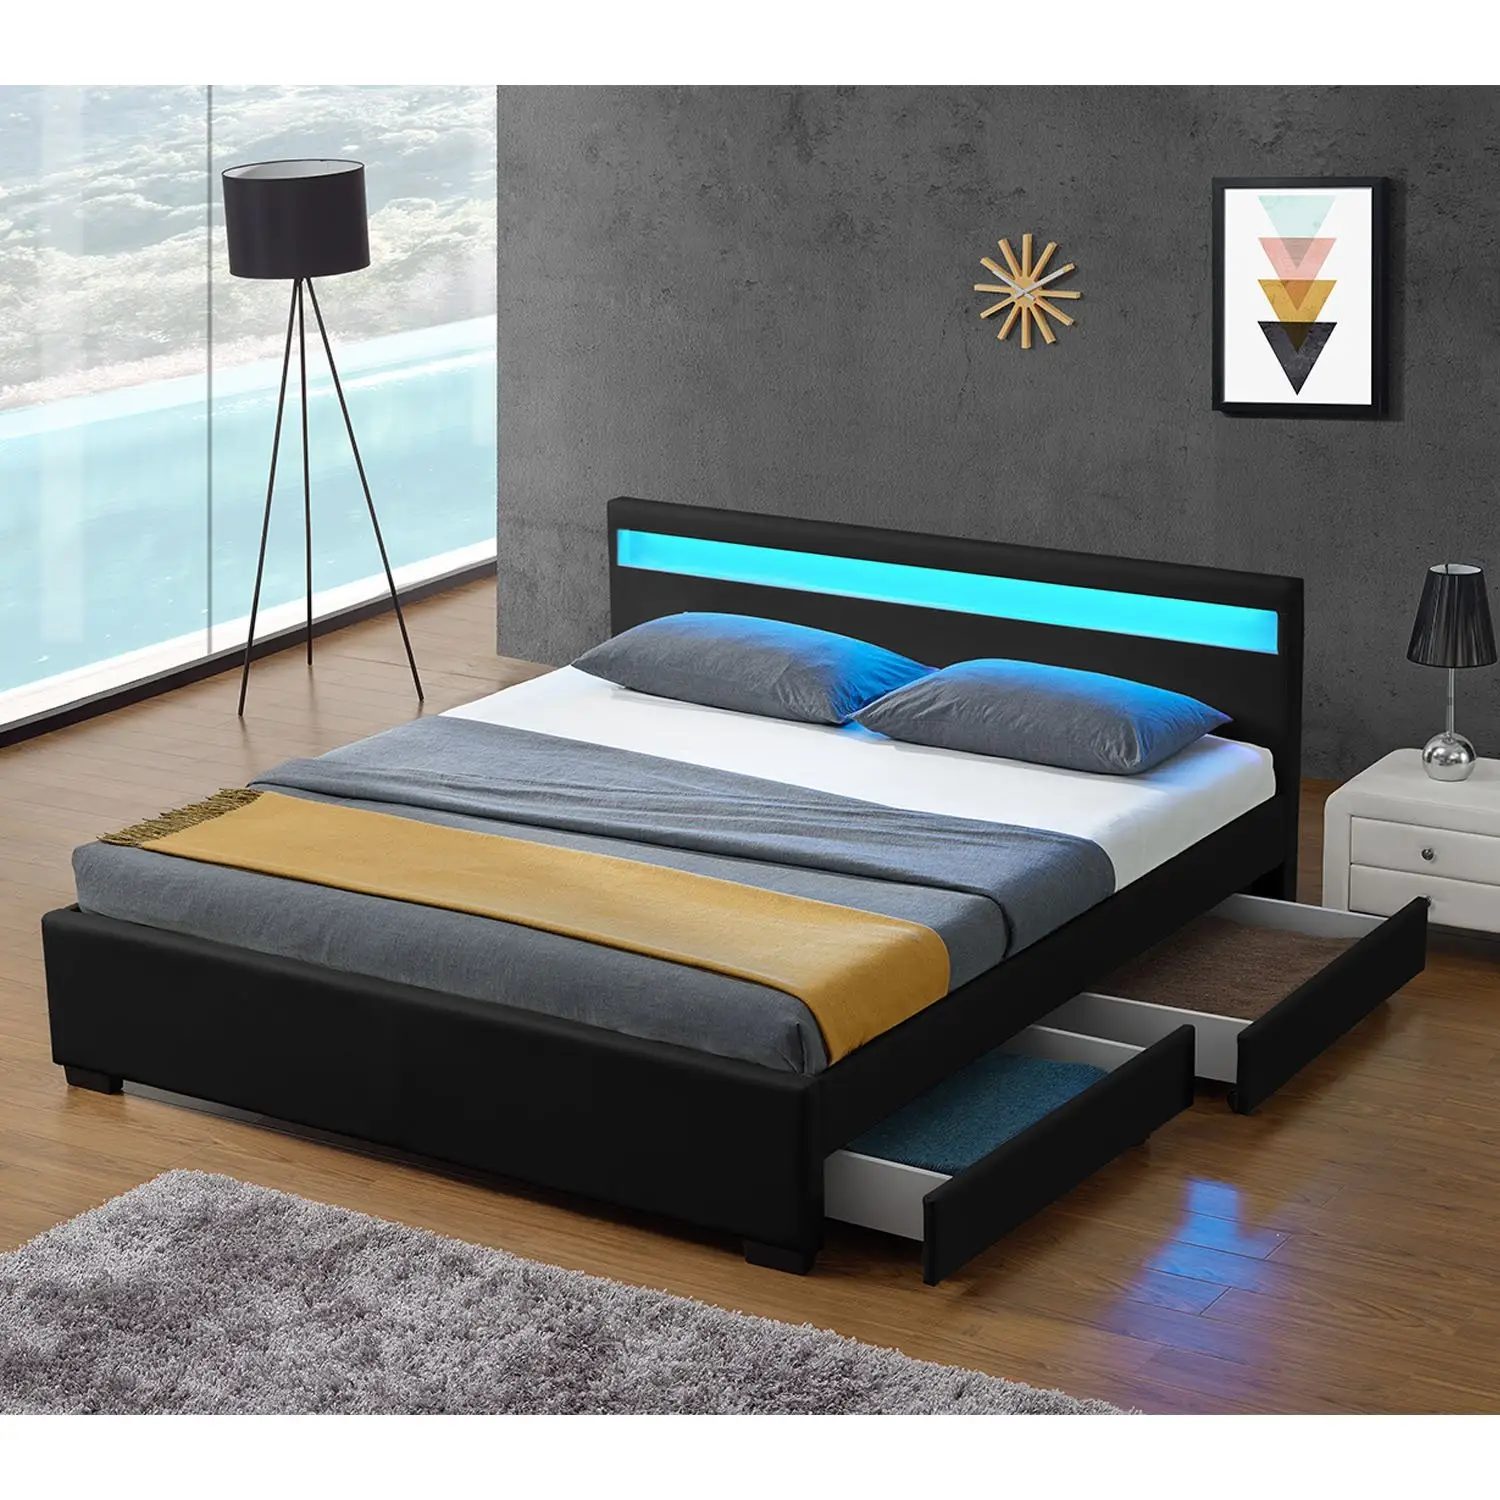 Nouveau design populaire Cadre de lit en cuir rembourré avec lumières Tête de lit Meubles de chambre à coucher Rangement moderne pleine grandeur Lit électrique